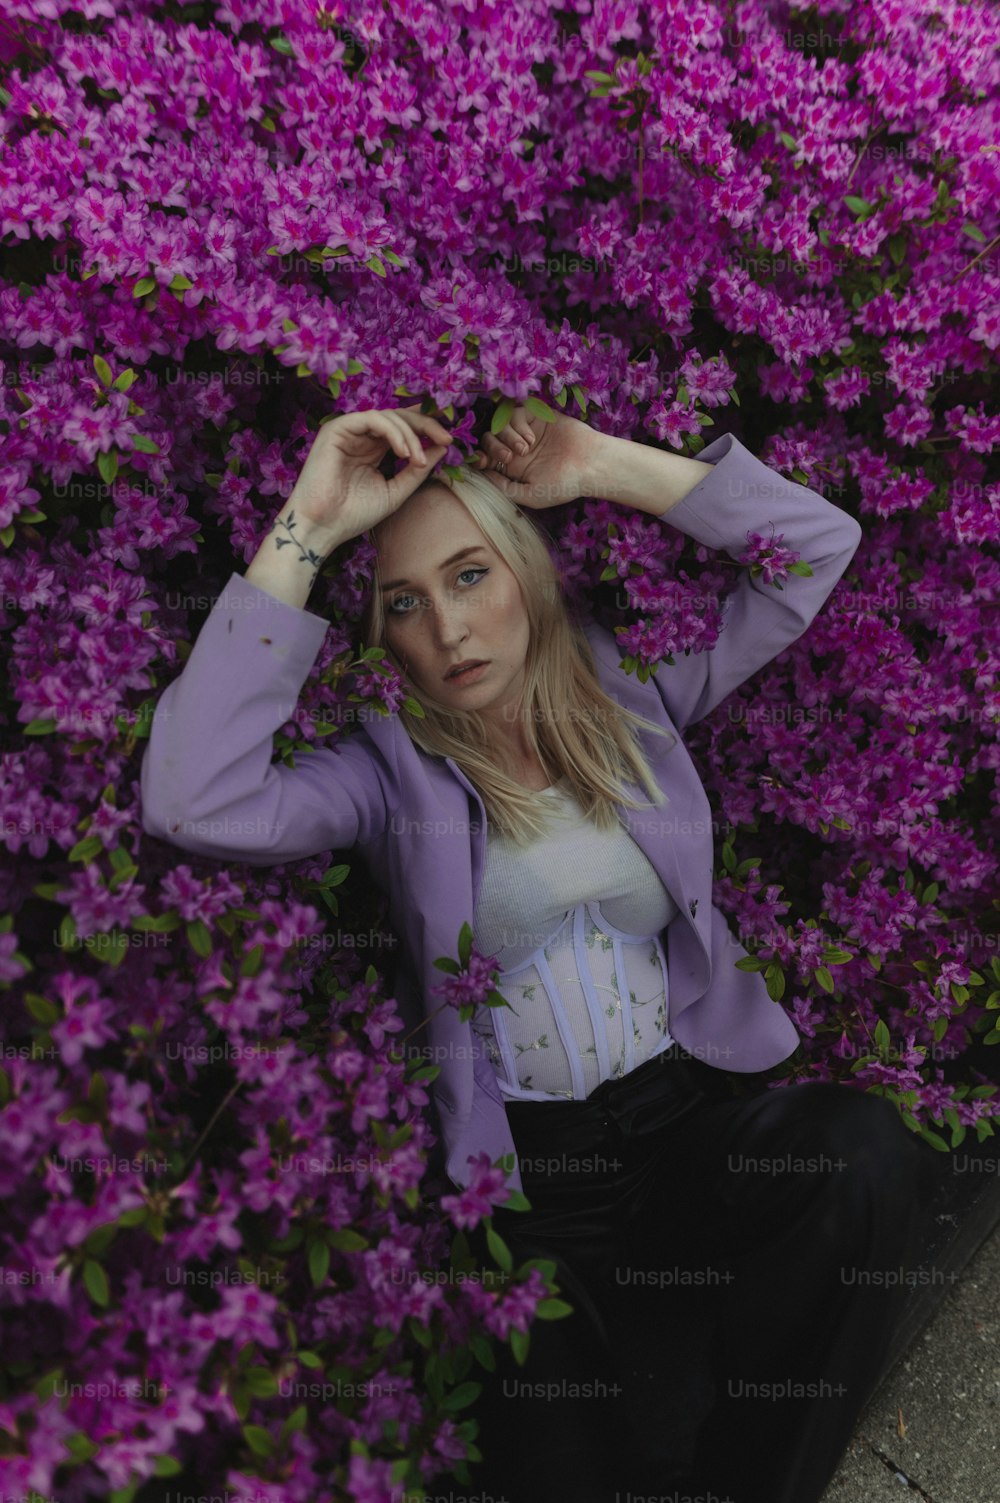 a woman sitting in a field of purple flowers